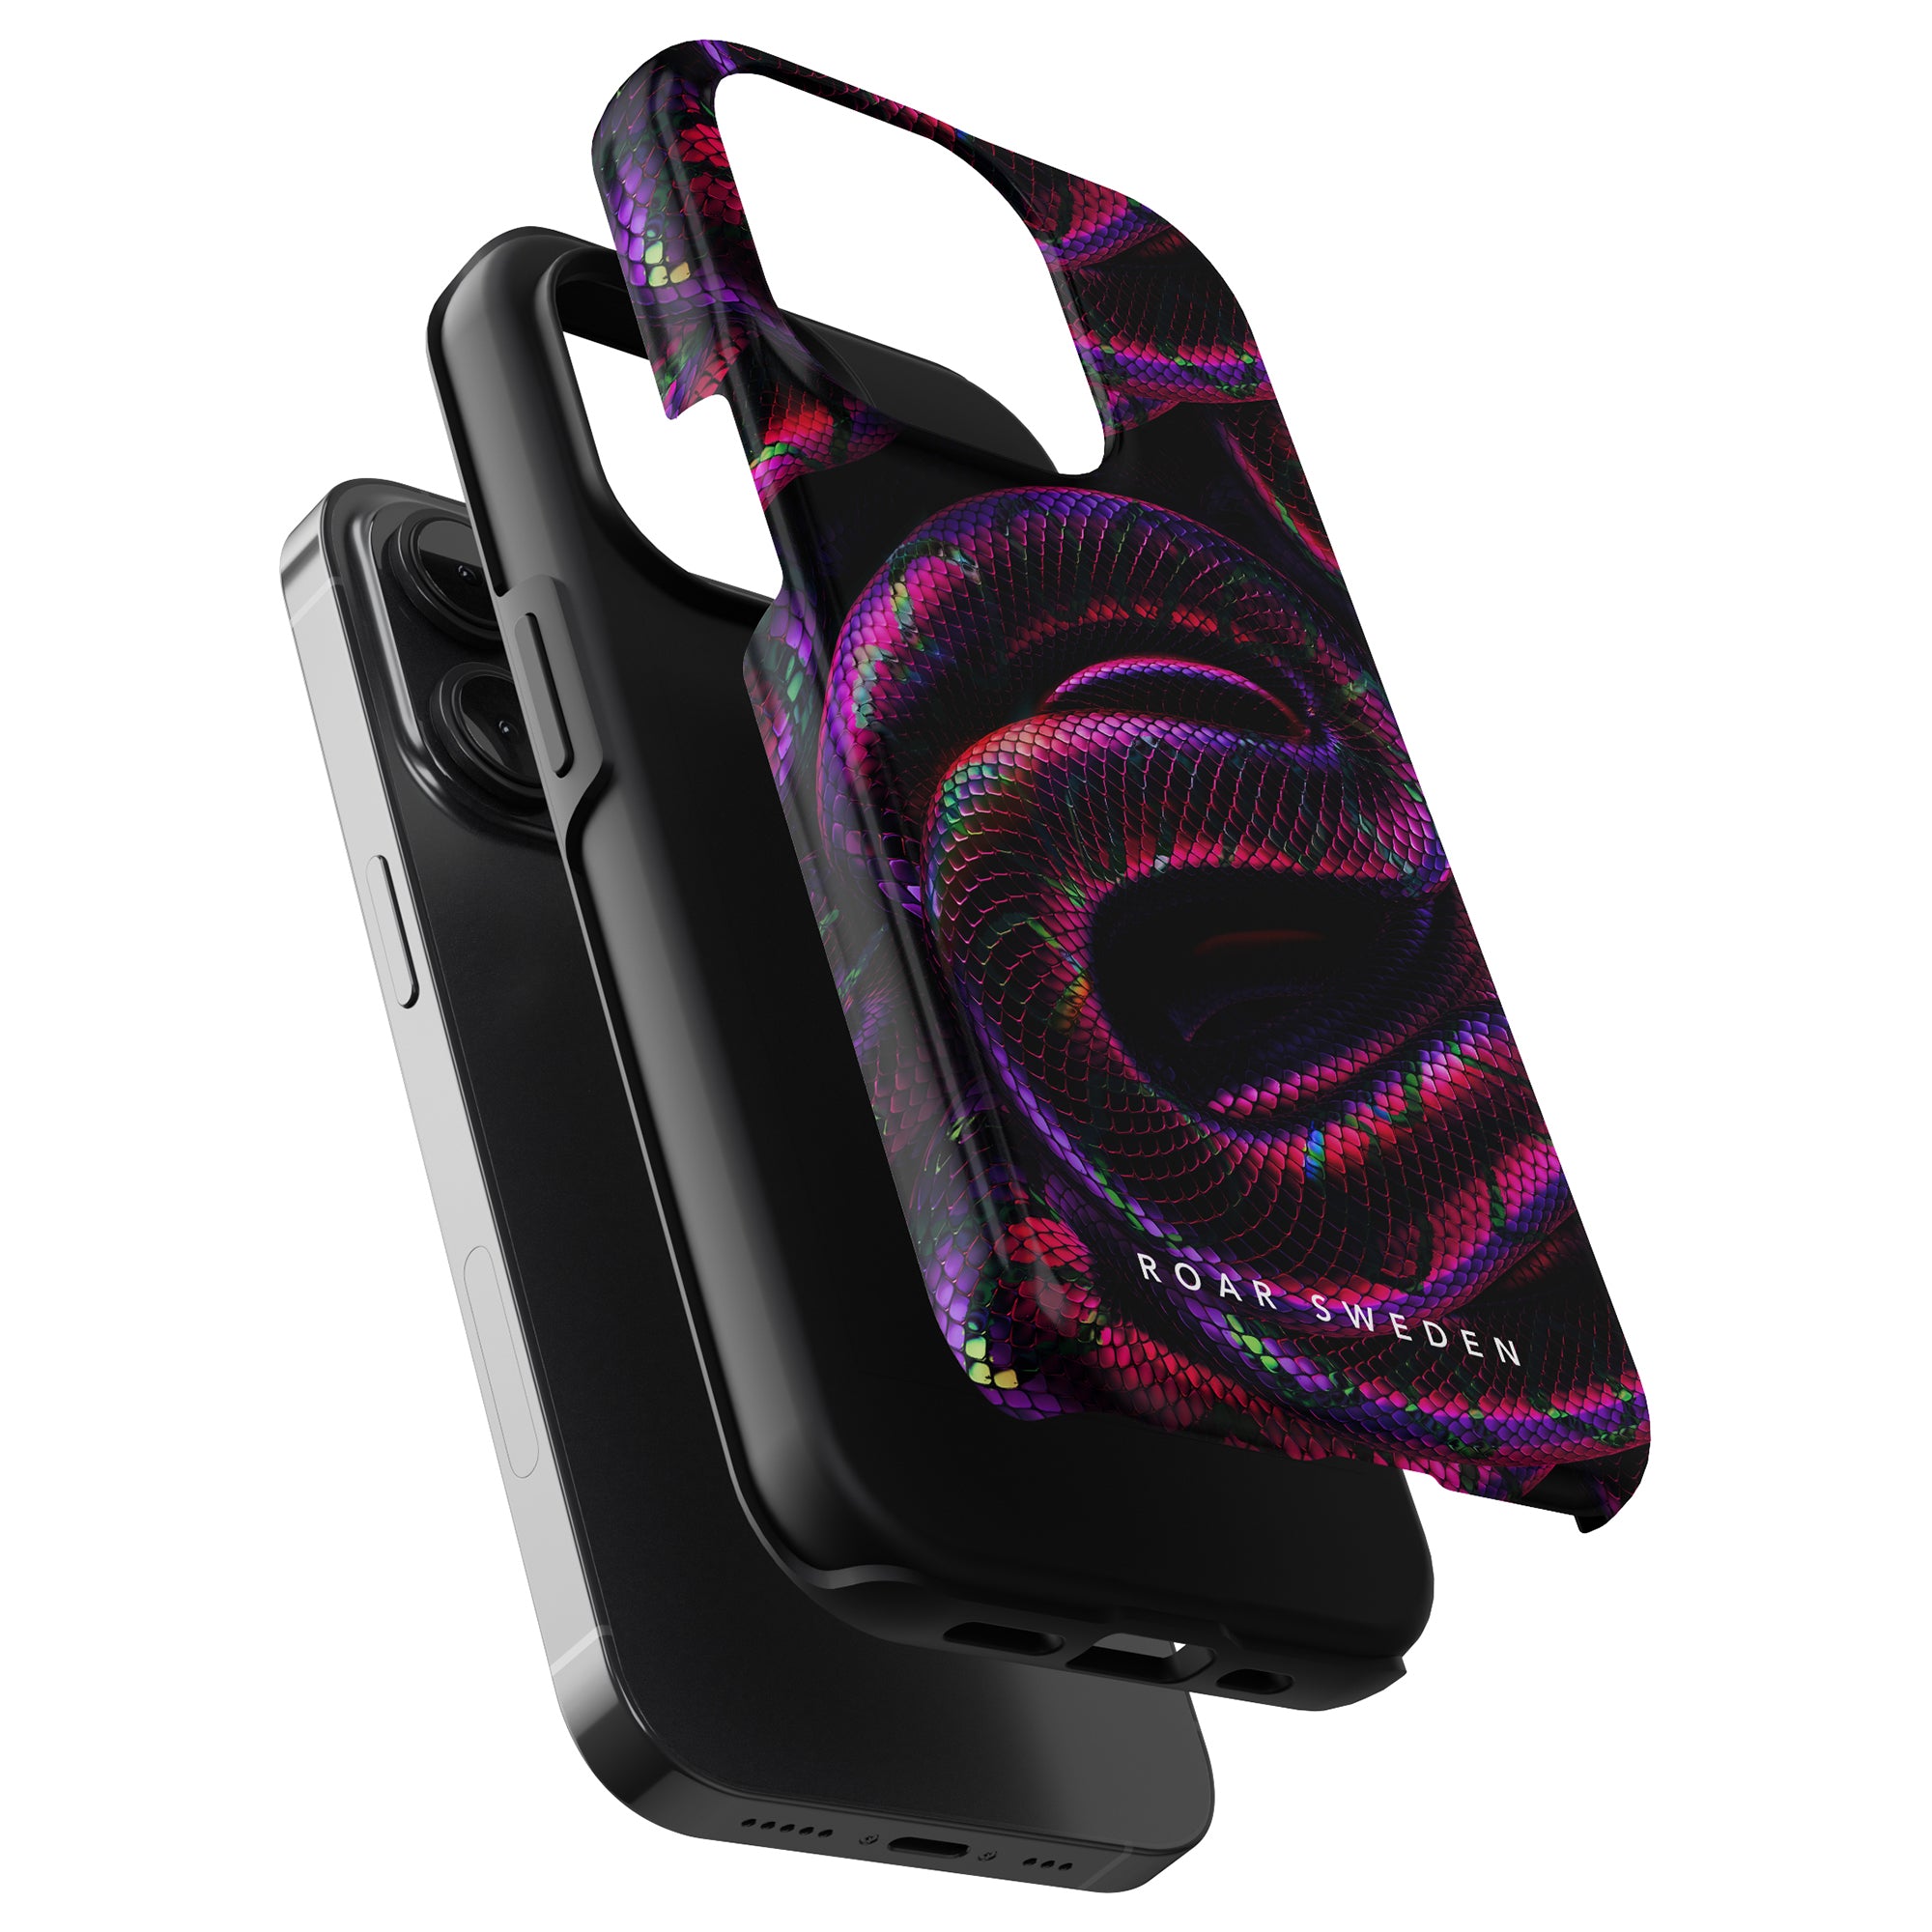 Venom - Tough Case från Roar Sweden har en bild av ormskinnsmönster, designad speciellt för iPhone 11 Pro.